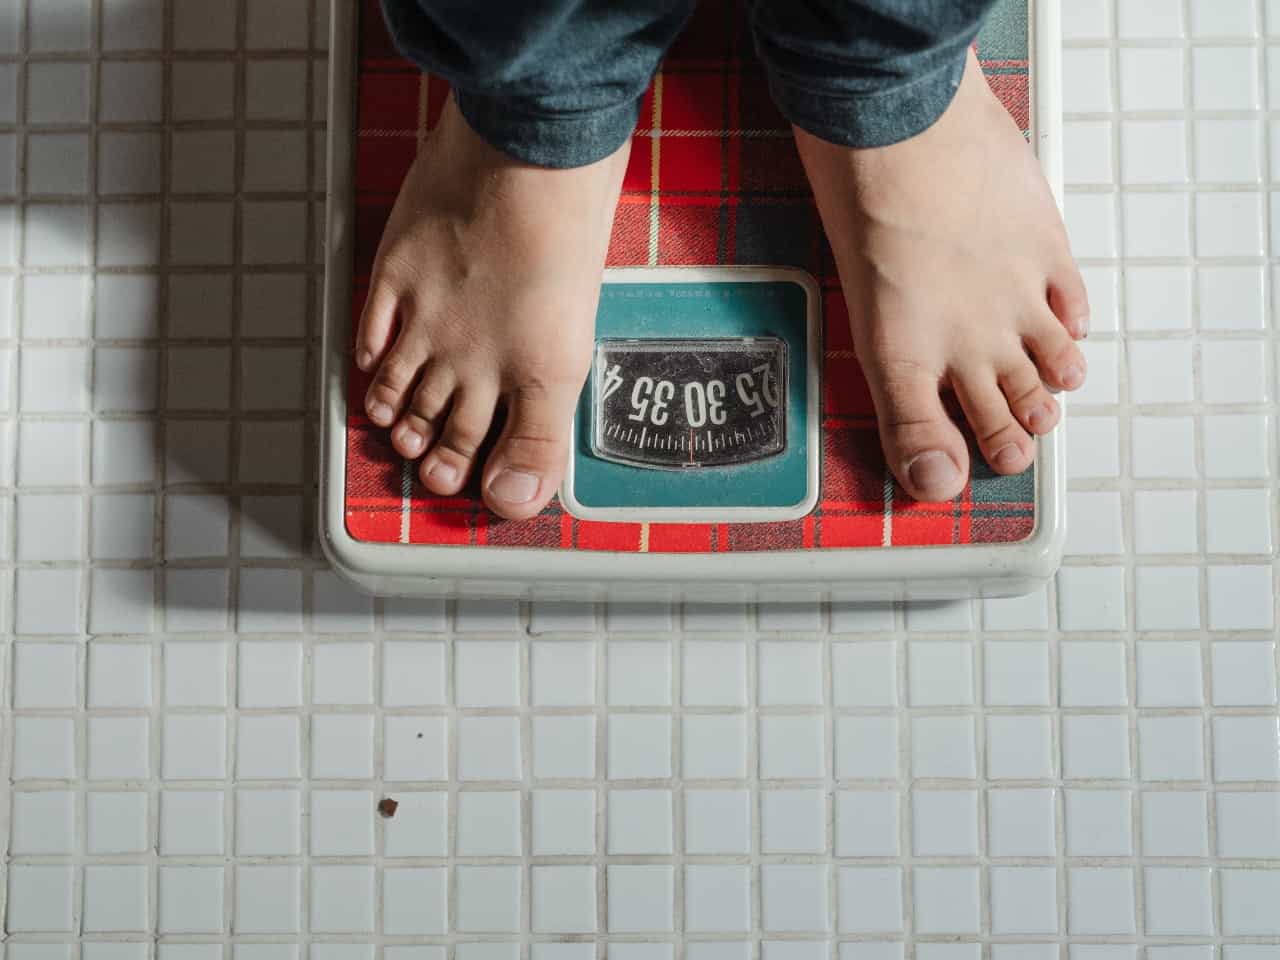 Imagem de uma pessoa em cima de uma balança, buscando calcular o peso ideal